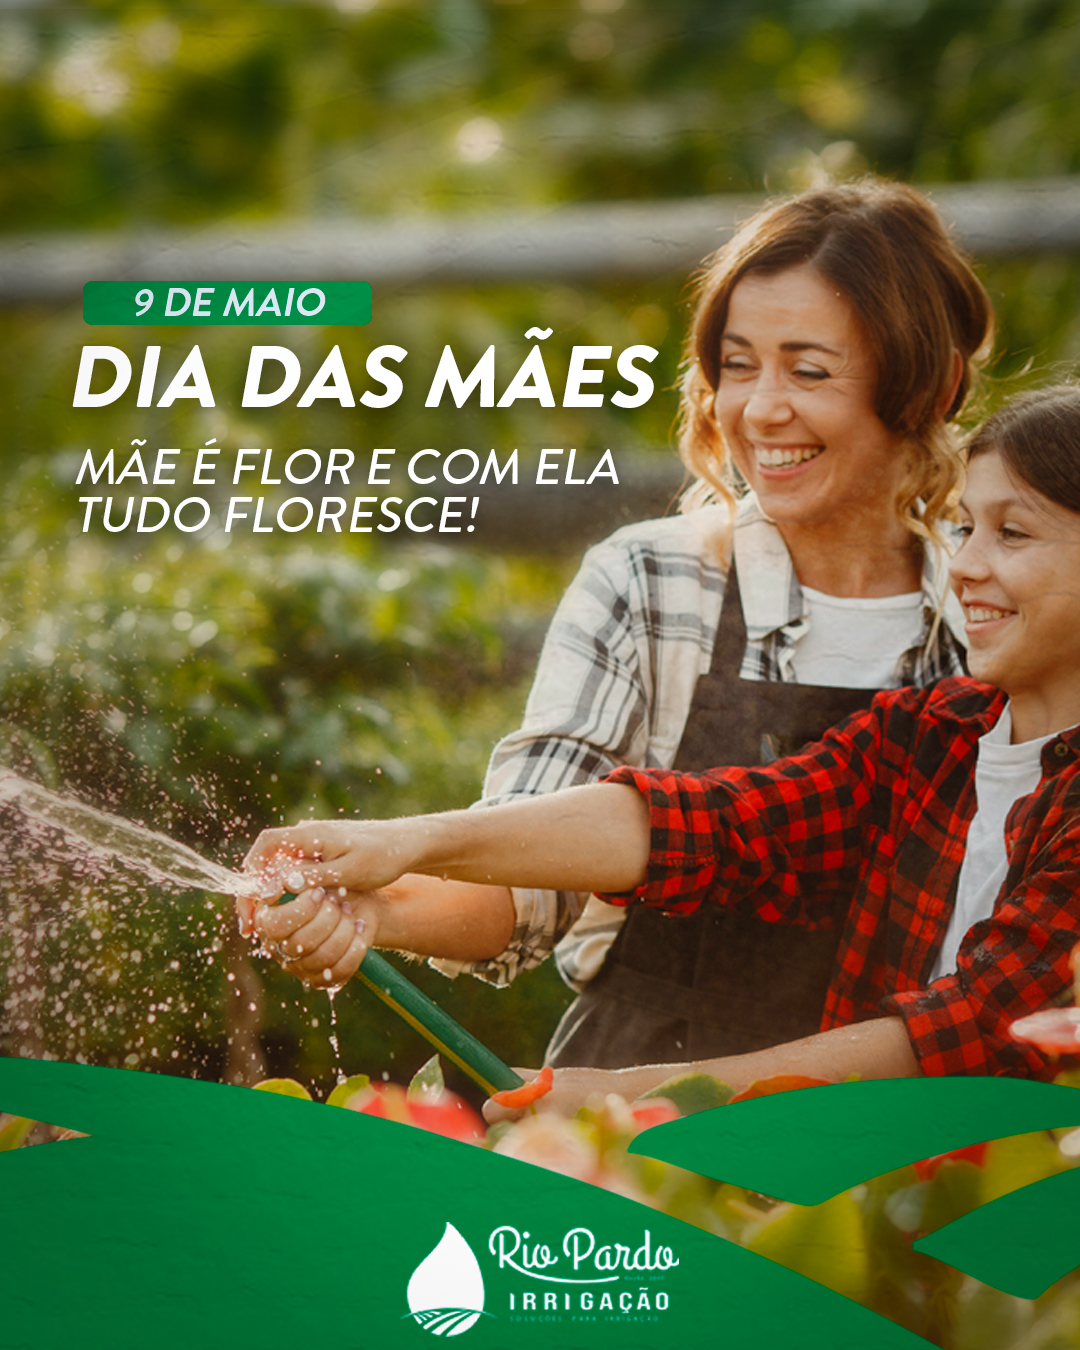 IRRIGAÇÃO RIO PARDO - Dia das mães - 2021